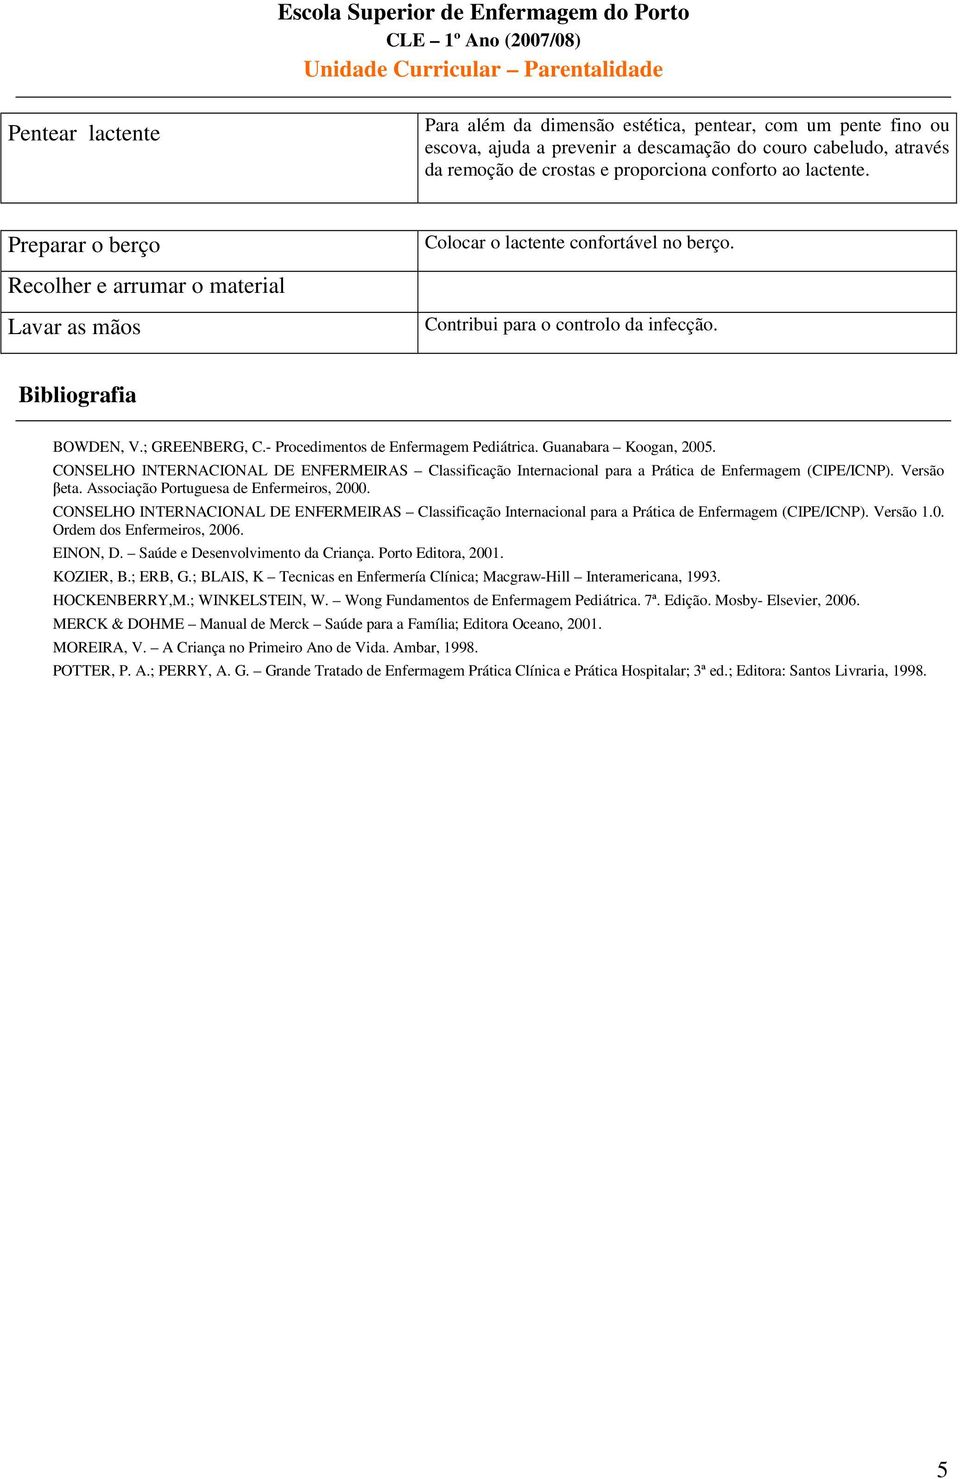 Guanabara Koogan, 2005. CONSELHO INTERNACIONAL DE ENFERMEIRAS Classificação Internacional para a Prática de Enfermagem (CIPE/ICNP). Versão βeta. Associação Portuguesa de Enfermeiros, 2000.